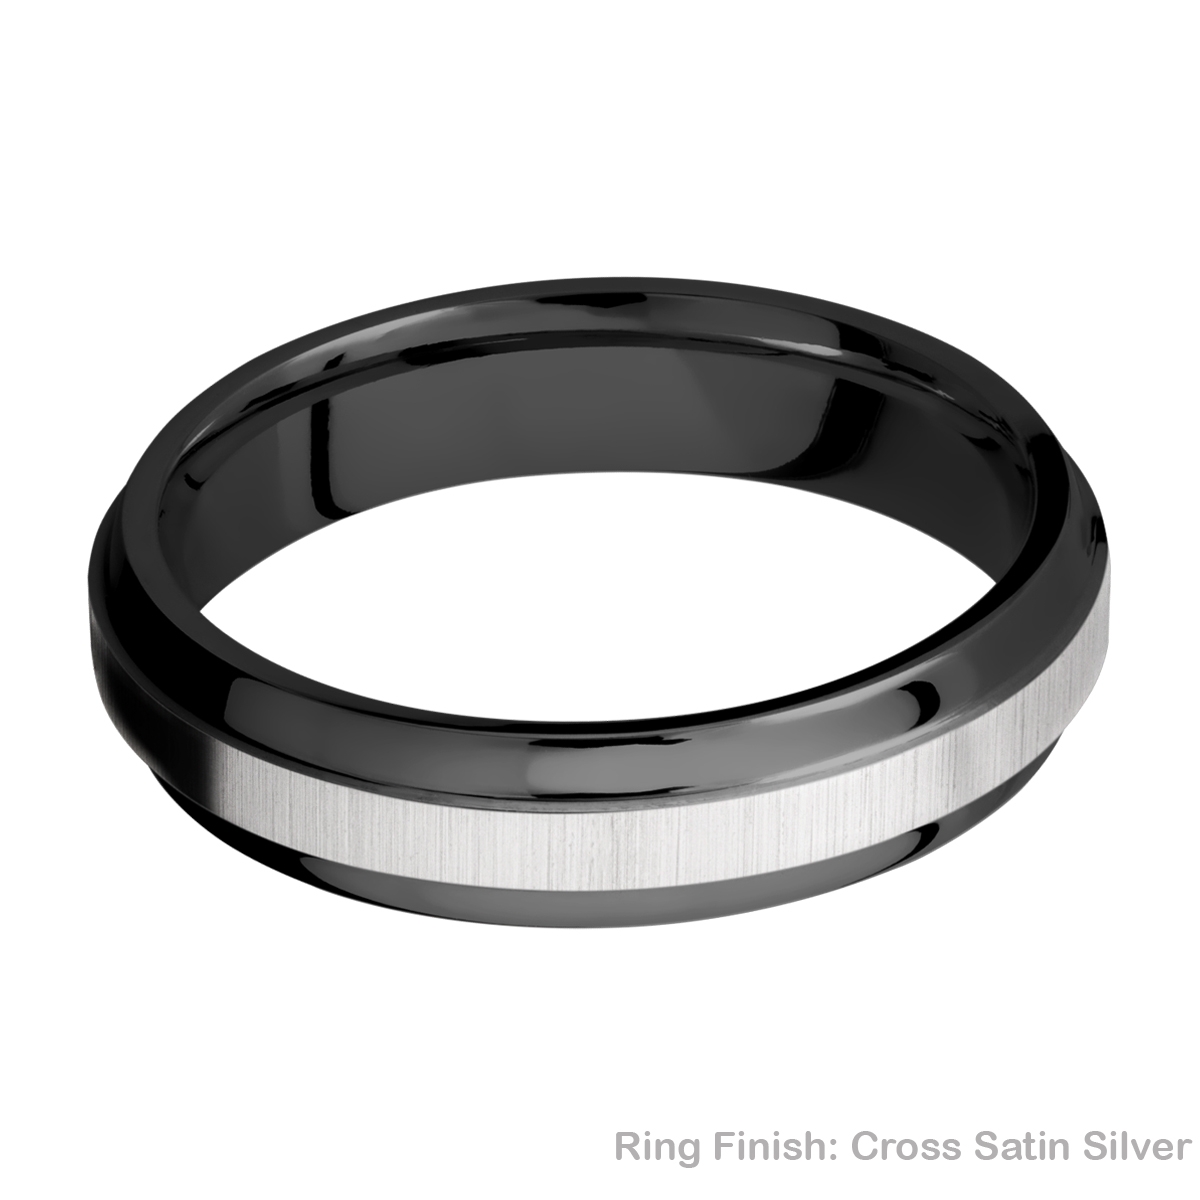 Lashbrook Z5B(S) Zirconium Wedding Ring or Band